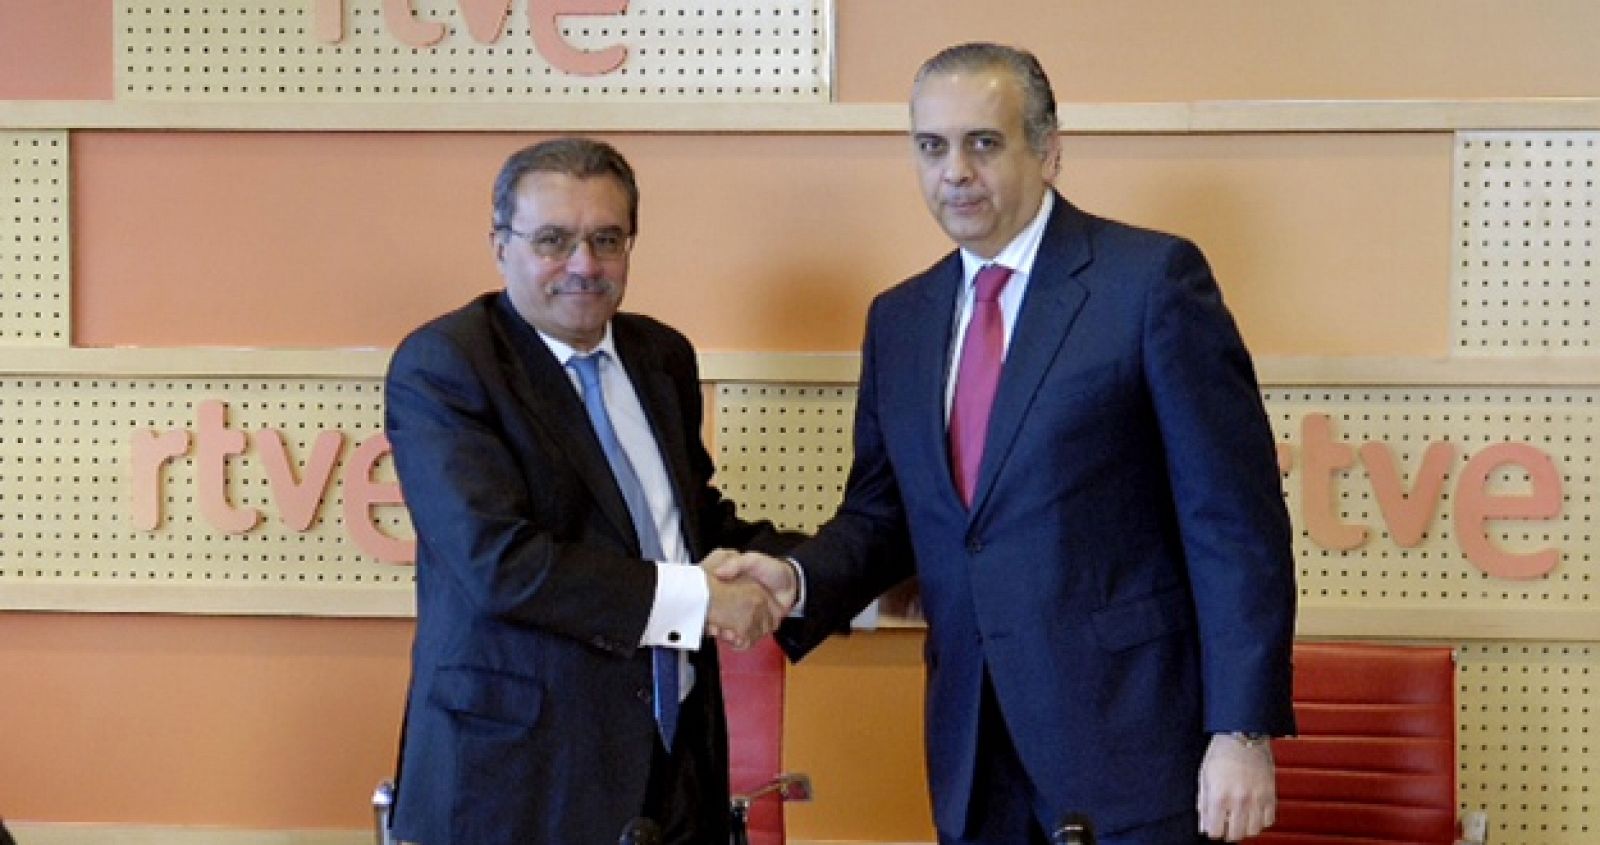 Jaime Gaiteiro, director general corporativo de RTVE, y José Luis Sáez, presidente de la FEB, se estrechan la mano tras firmar el acuerdo.